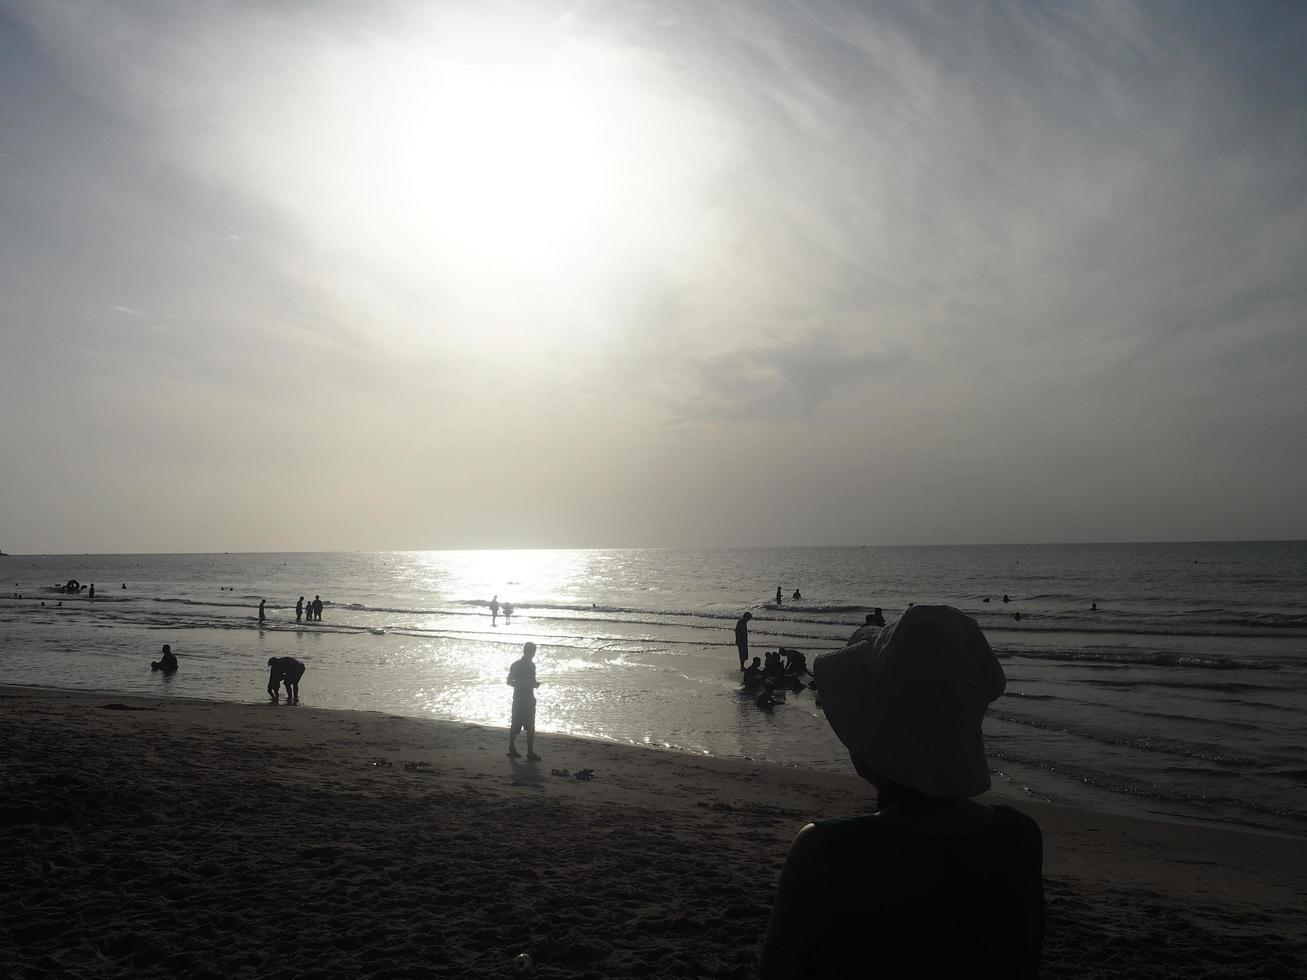 peple silhouette sur la plage photo